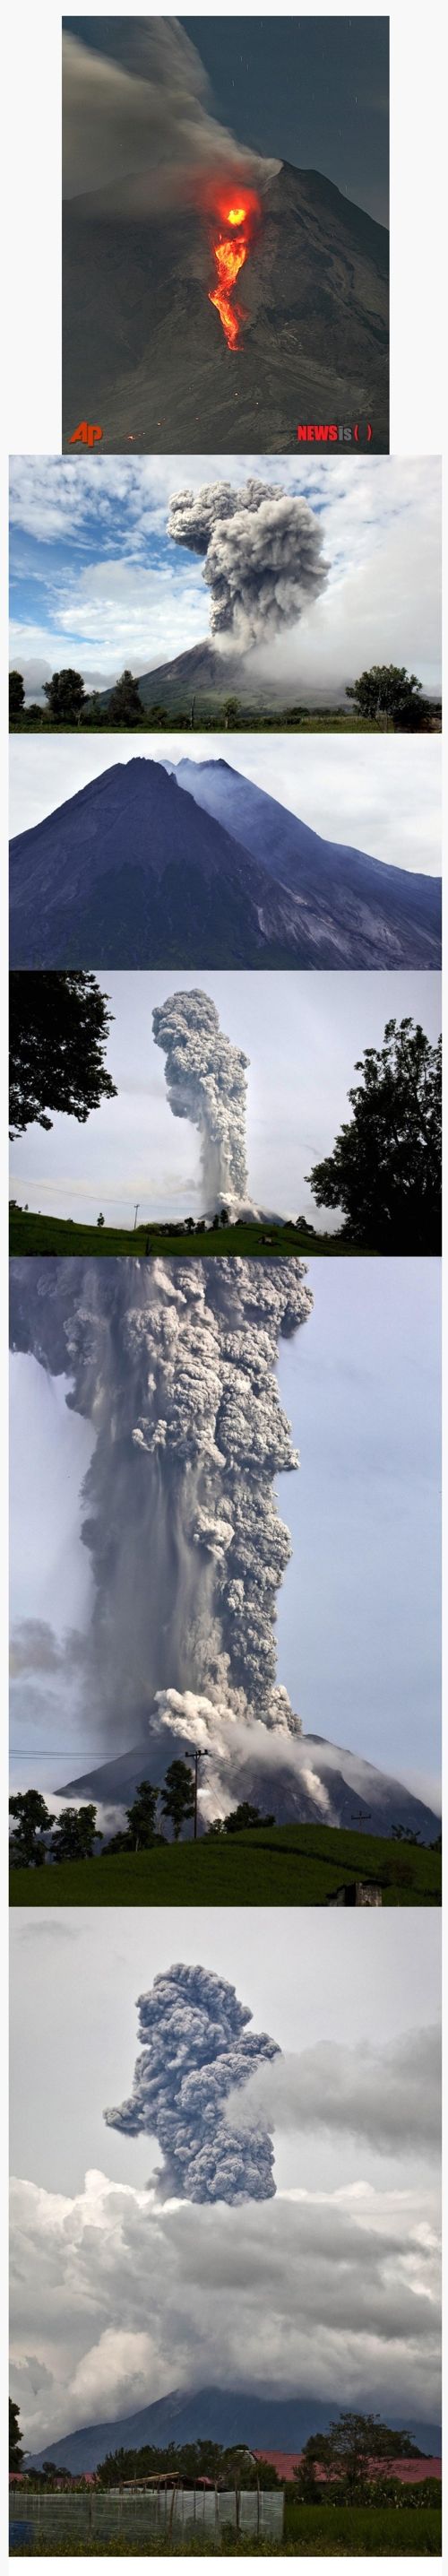 400년만에 터진 인도네시아 시나붕 화산 폭발